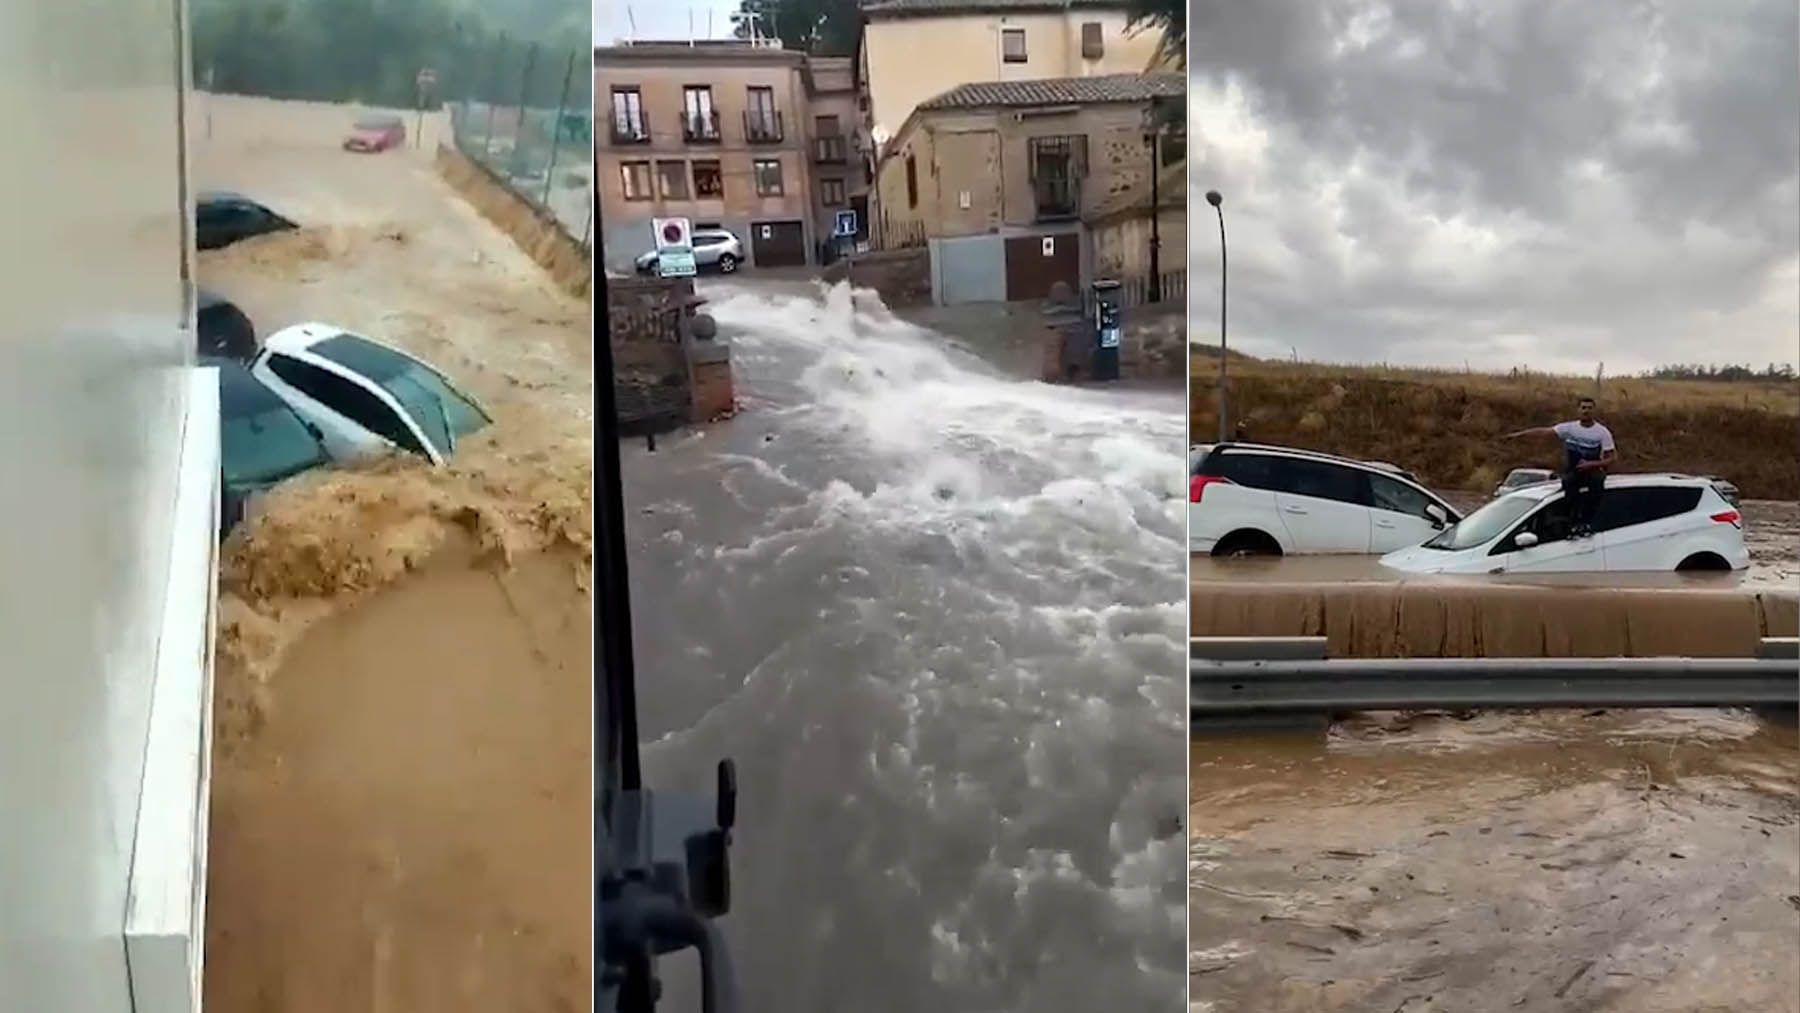 Torrenciales lluvias en Italia dejan al menos 10 muertos